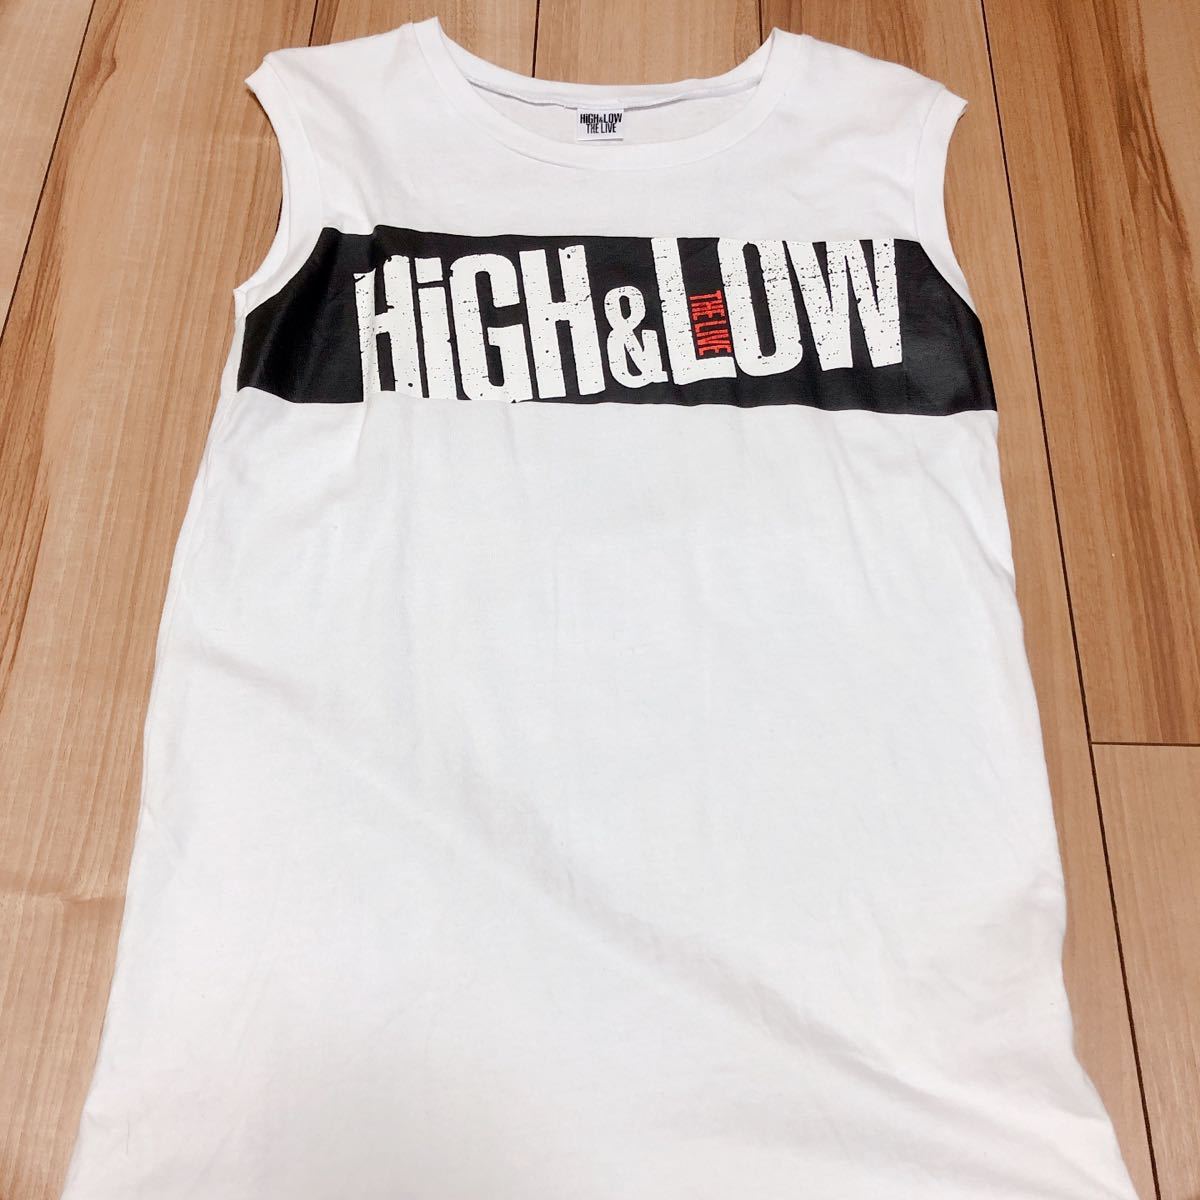 タンクトップ HiGH&LOW ハイロー グッズ live EXILE TRIBE ライブグッズ Tシャツ エグザイル グッズ